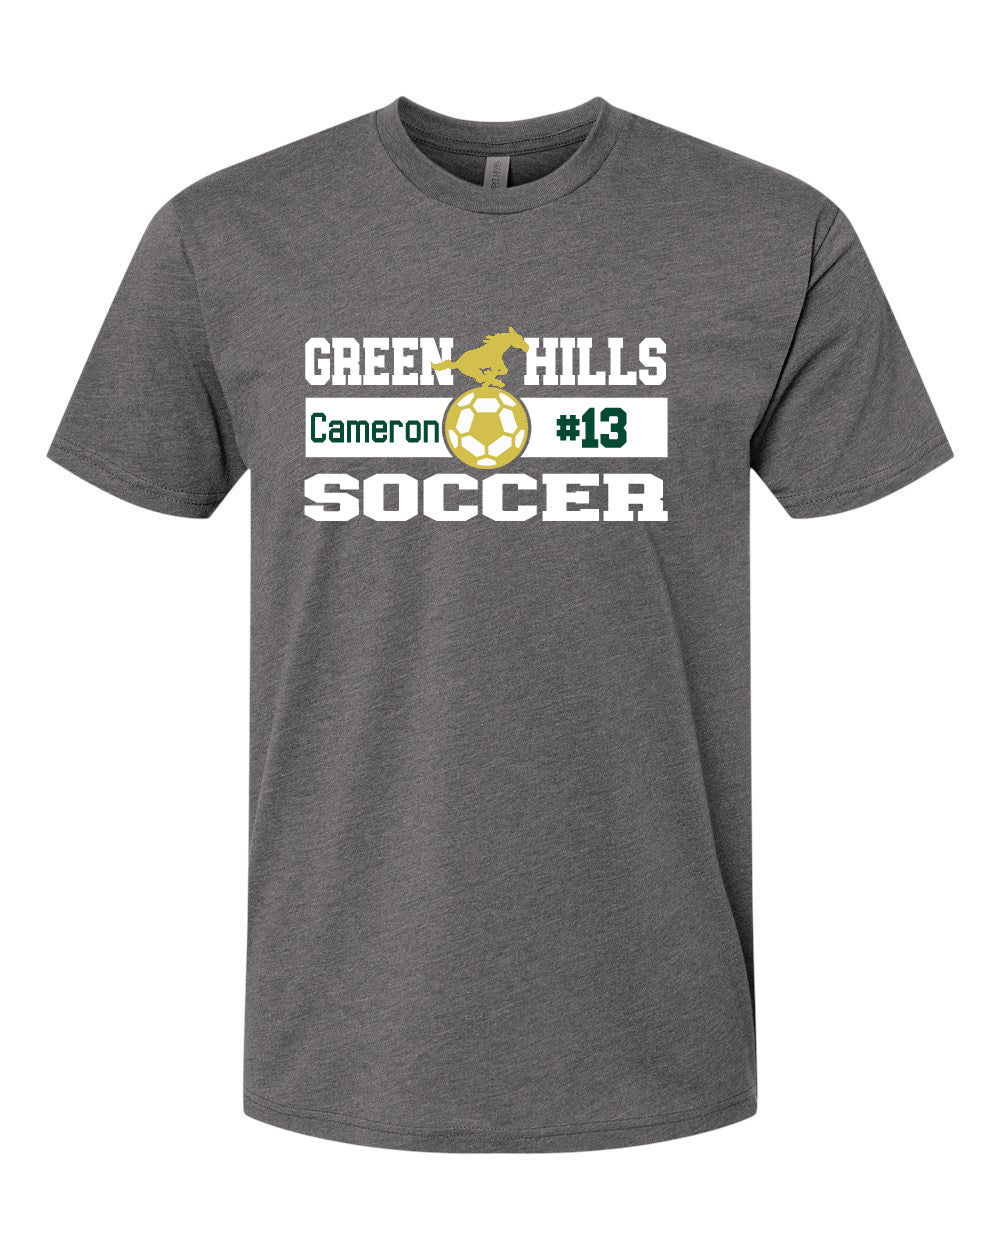 Green Hills Soccer Design 2 T-Shirt